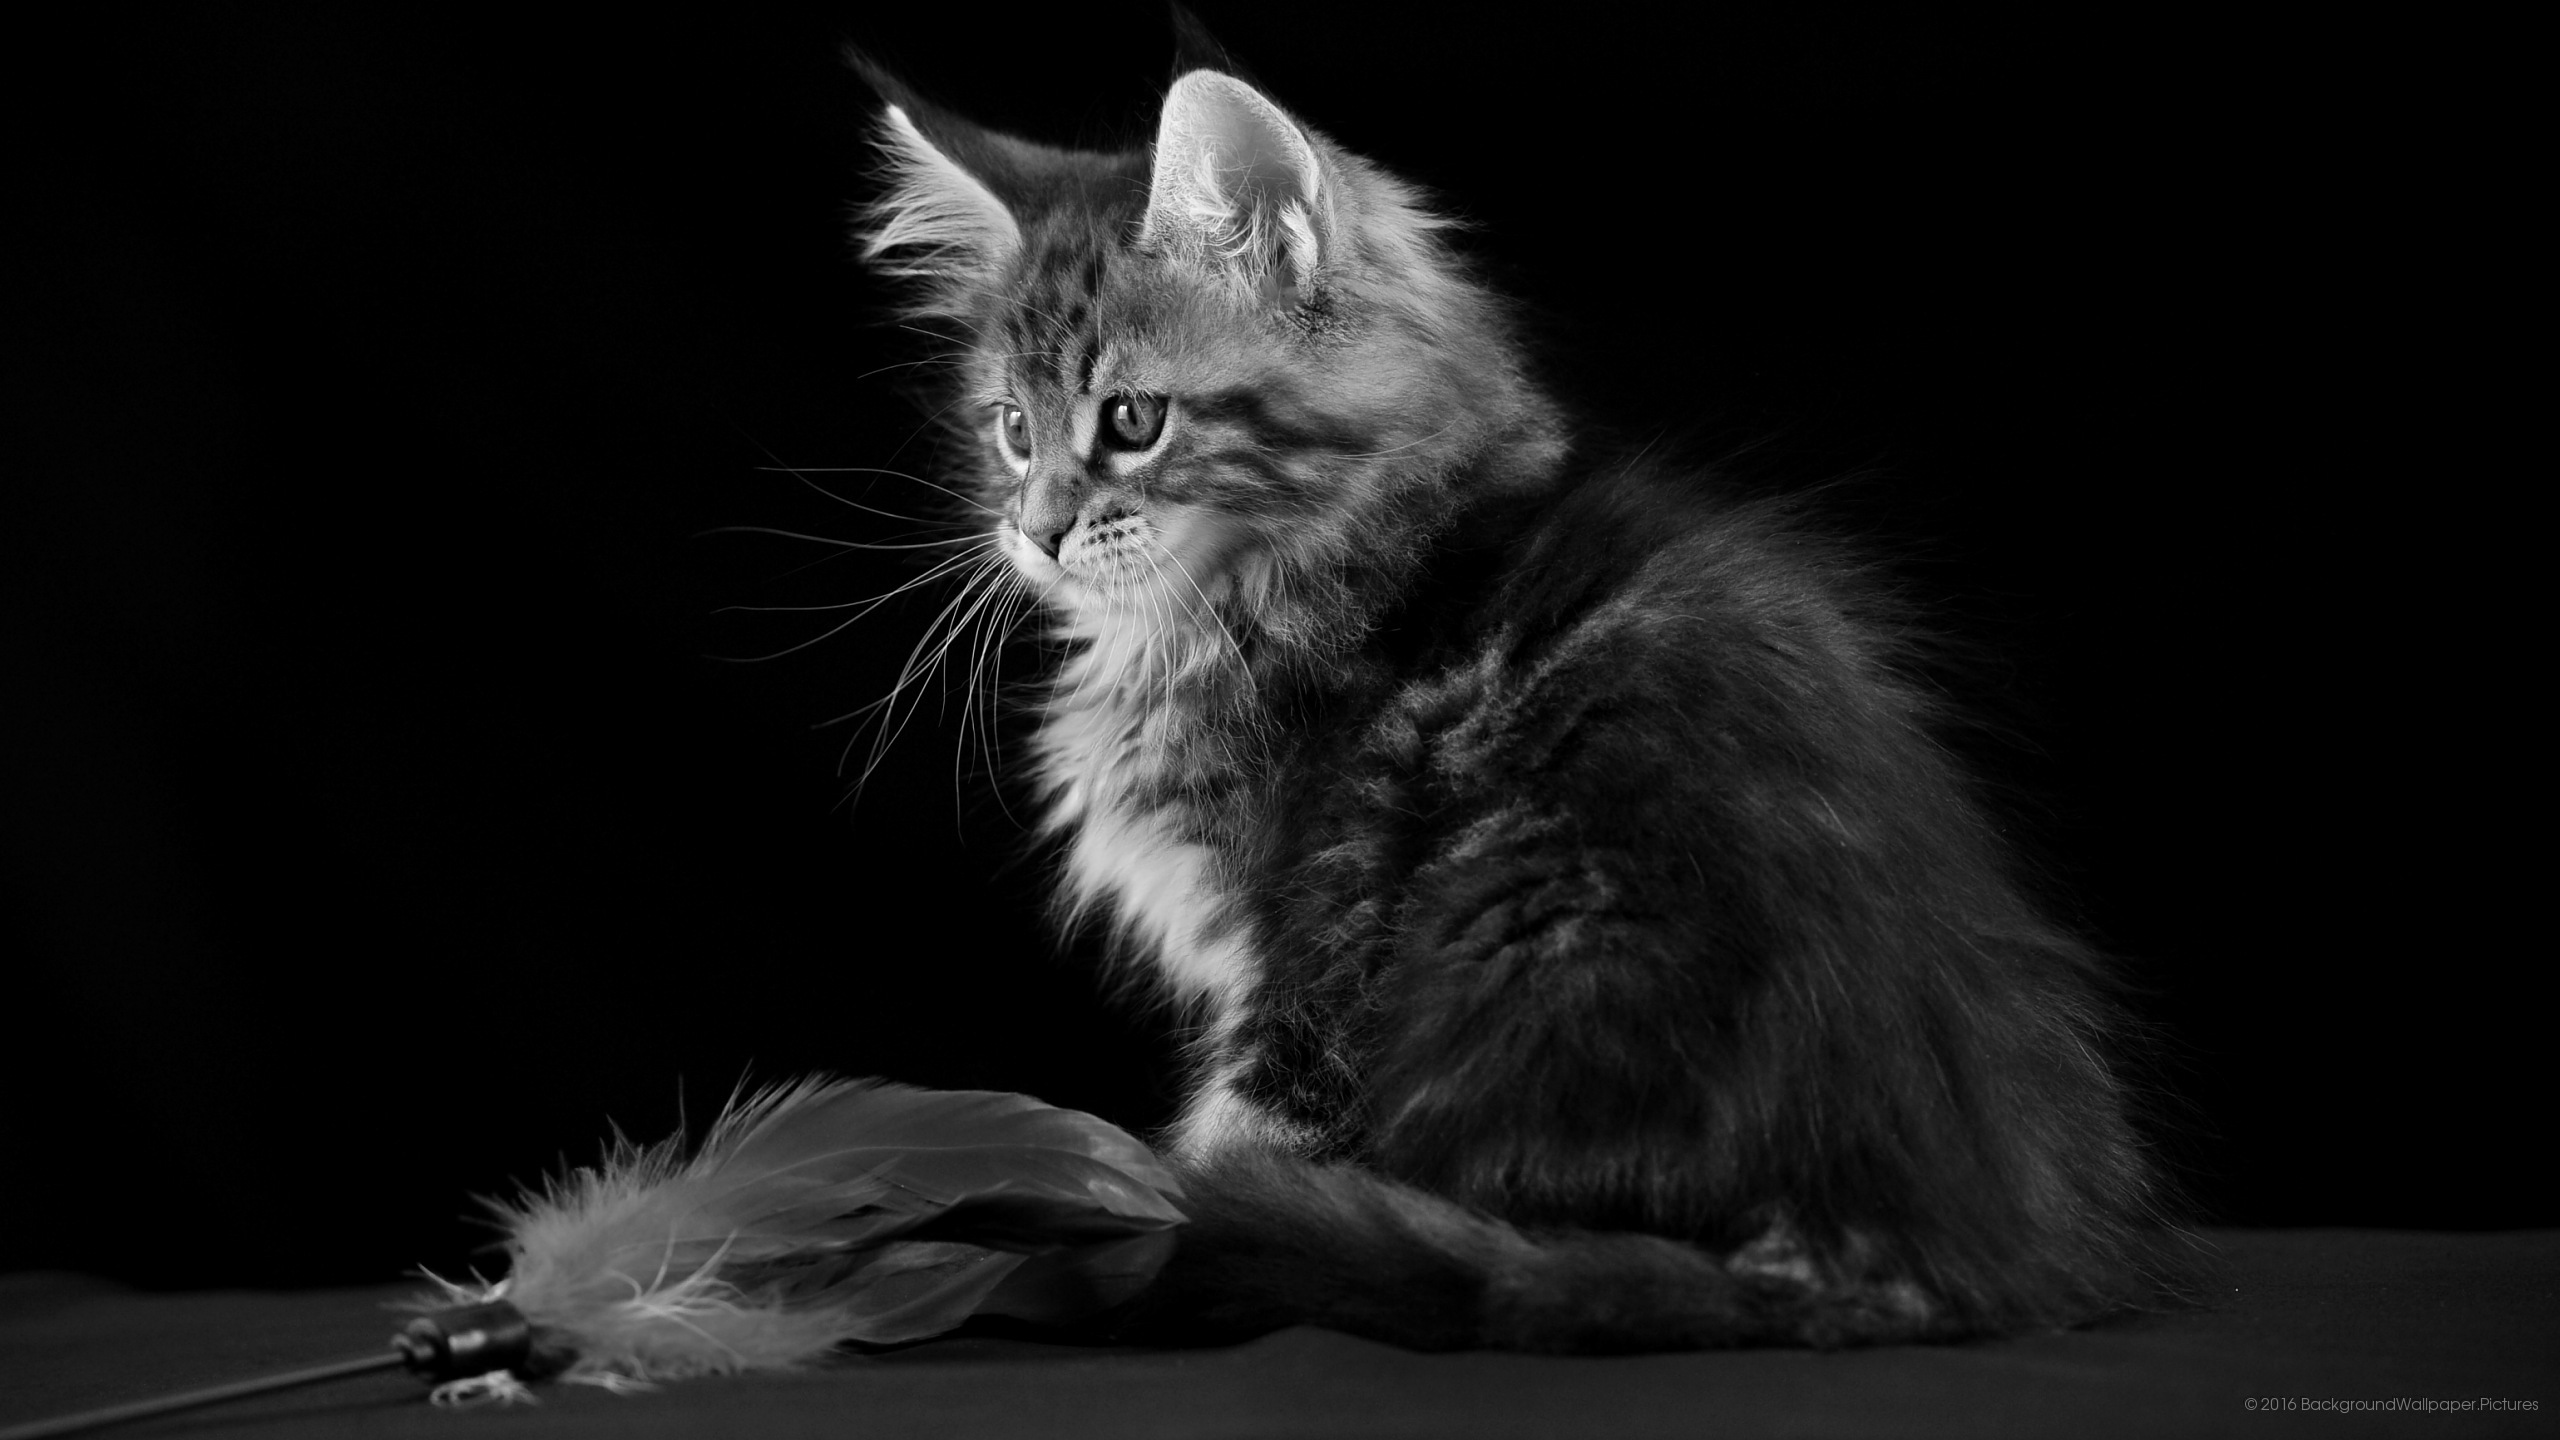 letv fond d'écran hd,chat,chats de petite à moyenne taille,félidés,moustaches,noir et blanc